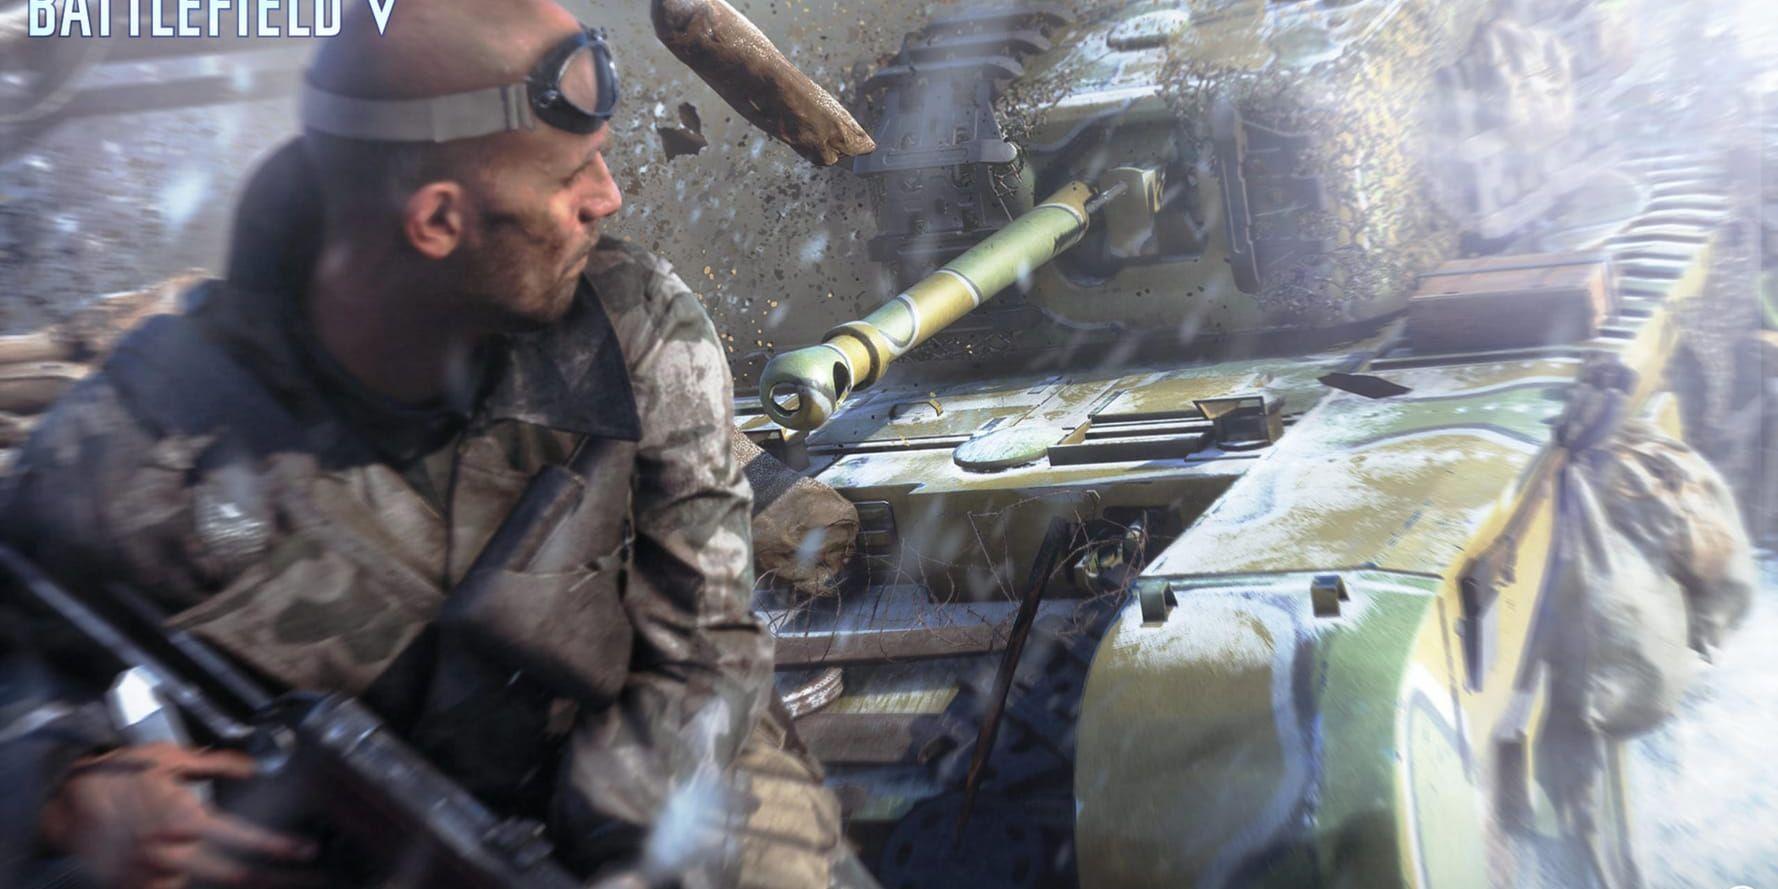 Spelläget firestorm till "Battlefield V" har utvecklats av svenska Dice i samarbete med brittiska Criterion. Pressbild.